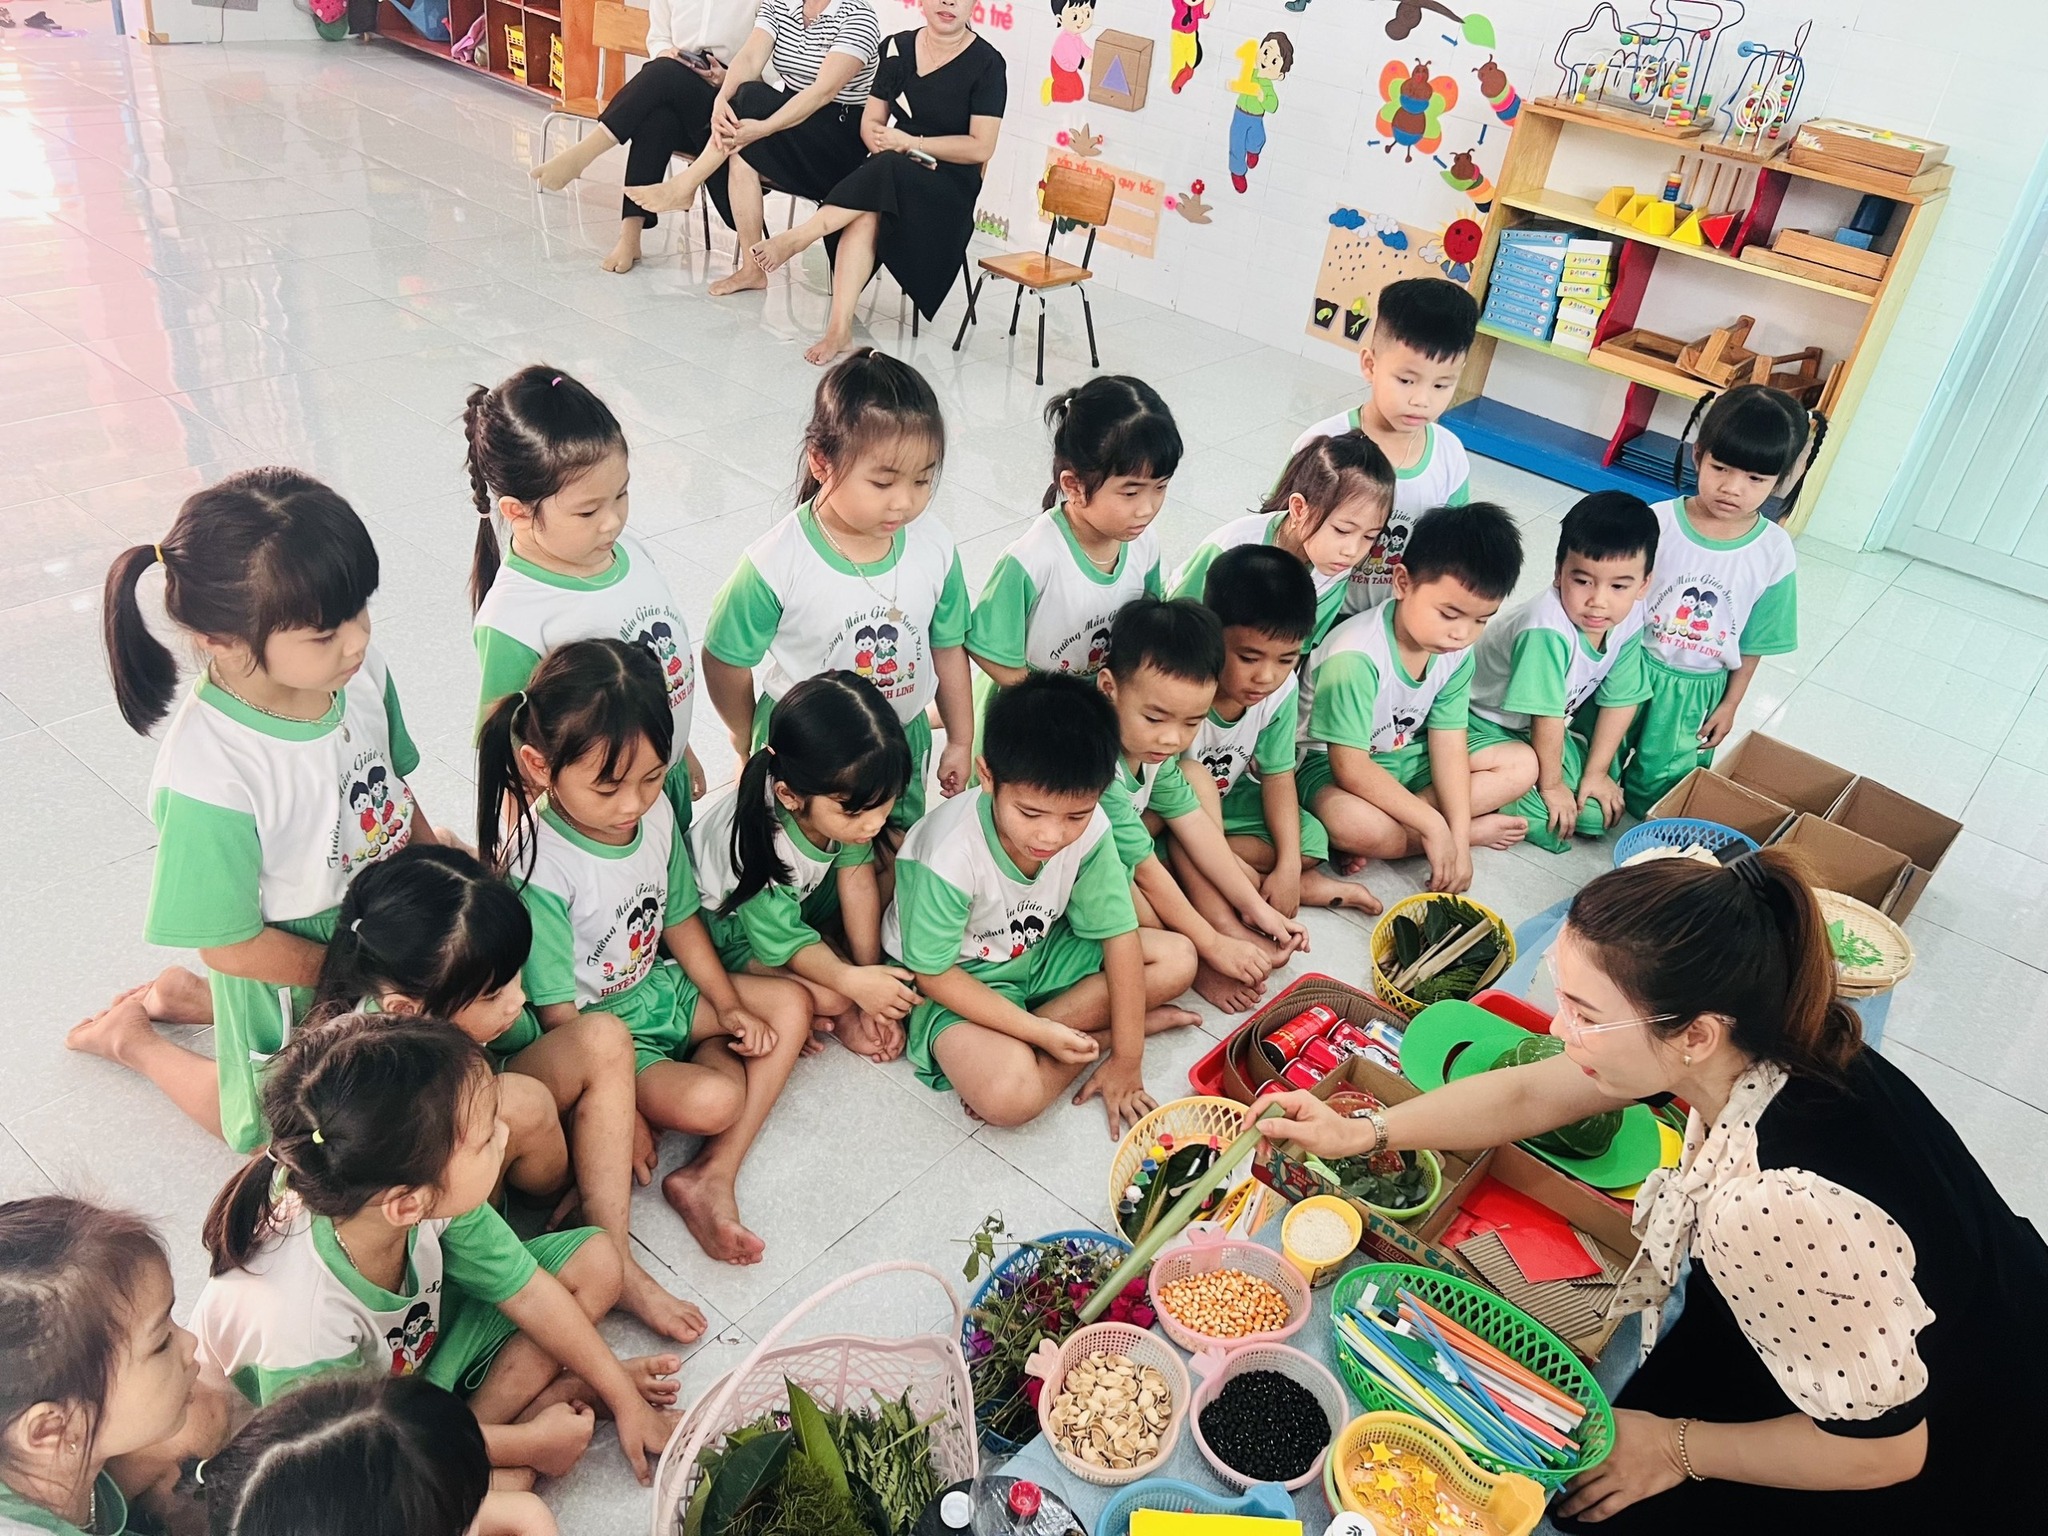 Bình Thuận: Nhiều khoản thu, chi sai quy định tại Trường MG Suối Kiết